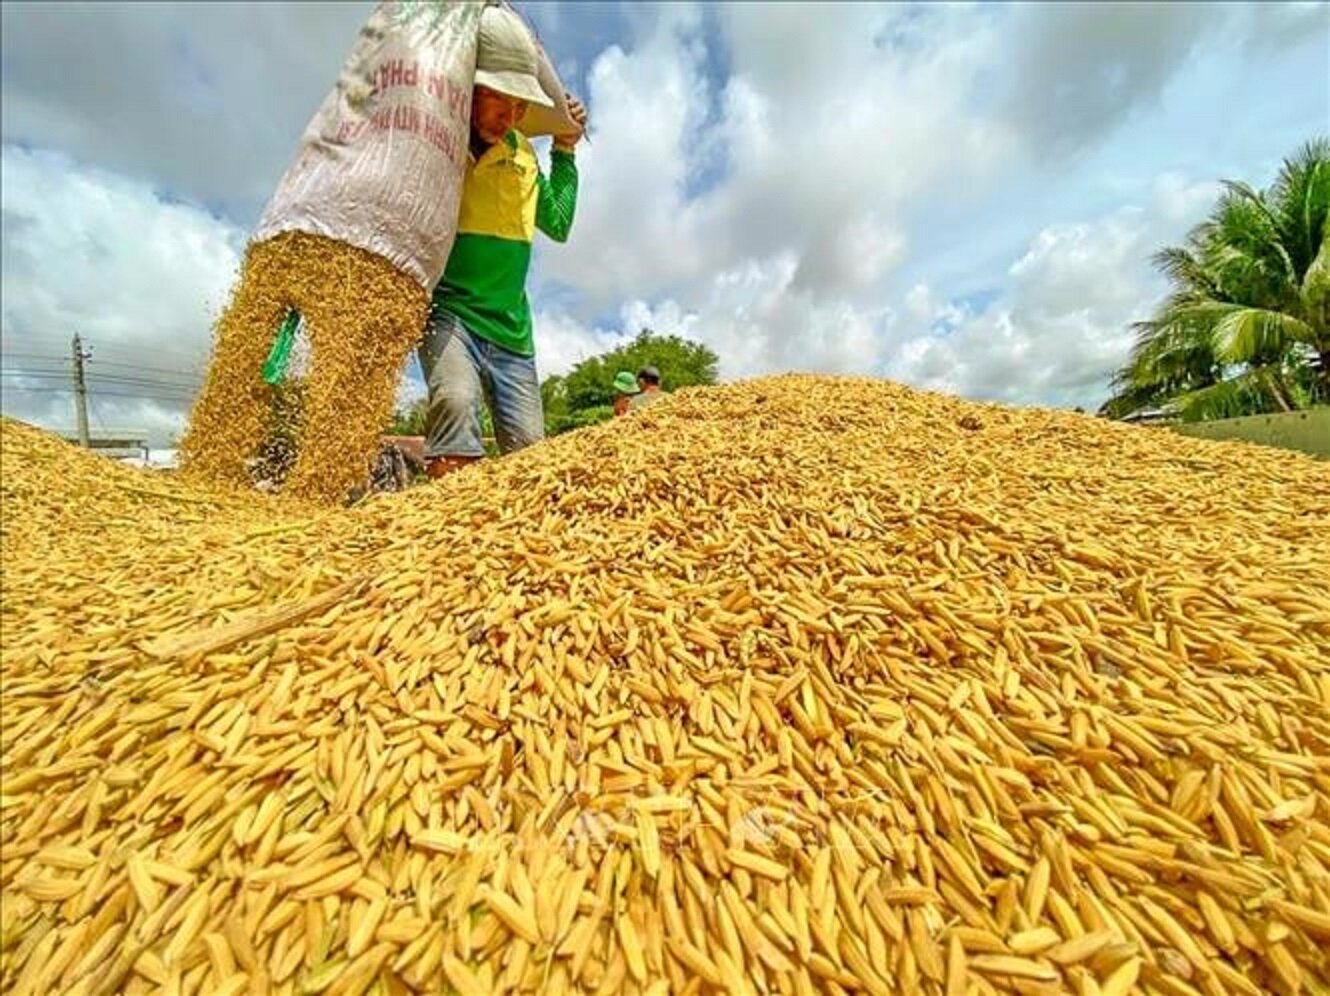 Bộ Công Thương yêu cầu doanh nghiệp bình ổn giá gạo, tránh mua gom ồ ạt gây bất ổn thị trường, mất cân đối cung cầu. (Ảnh minh họa)